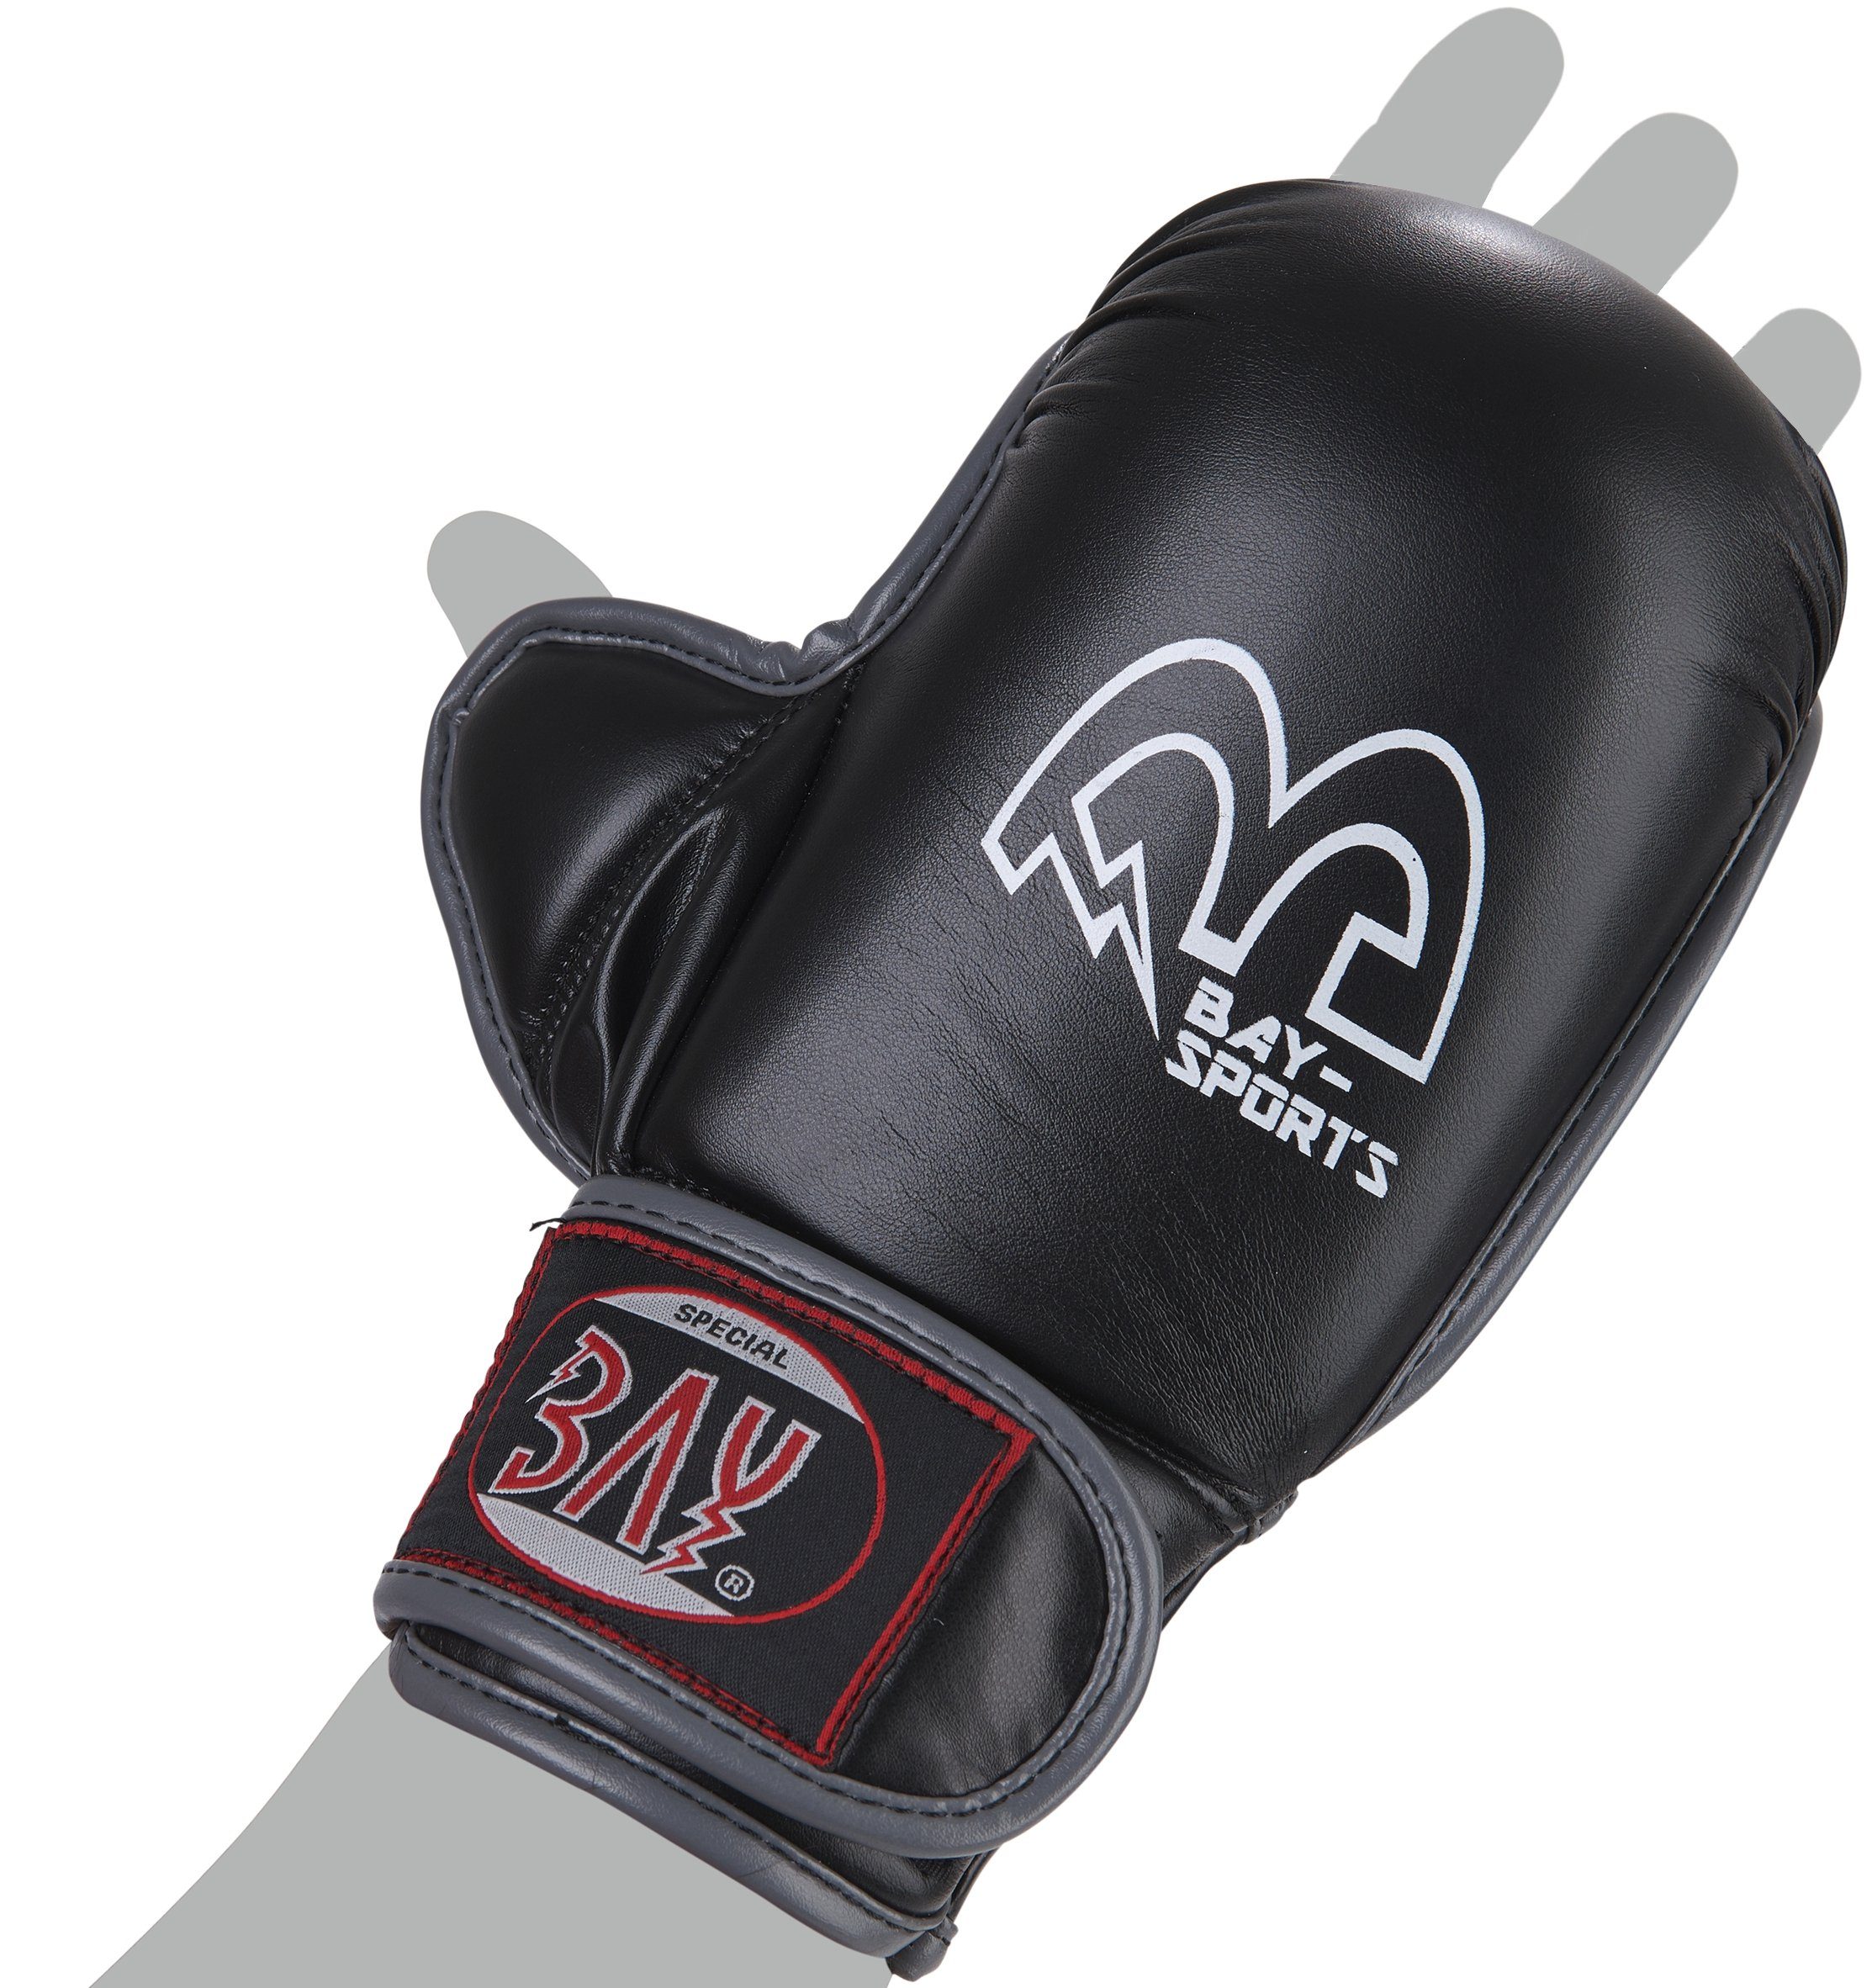 BAY-Sports MMA-Handschuhe Cage Fighter Krav Erwachsene Maga XXS Kinder - XL Handschutz Handschützer, und